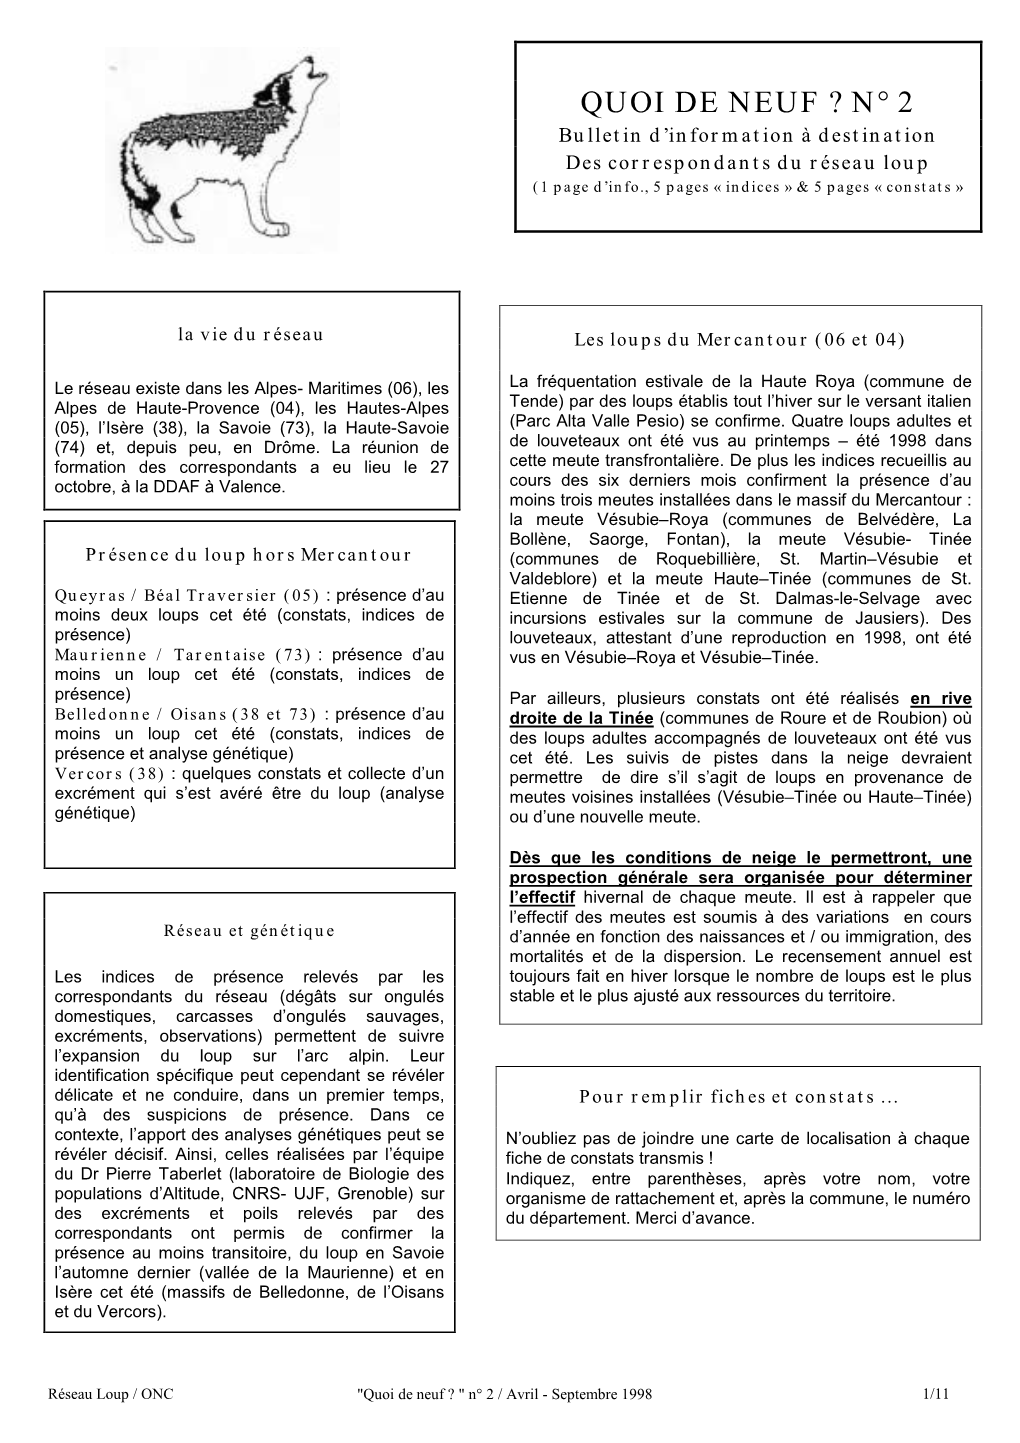 QUOI DE NEUF ? N° 2 Bulletin D’Information À Destination Des Correspondants Du Réseau Loup (1 Page D’Info., 5 Pages « Indices » & 5 Pages « Constats »